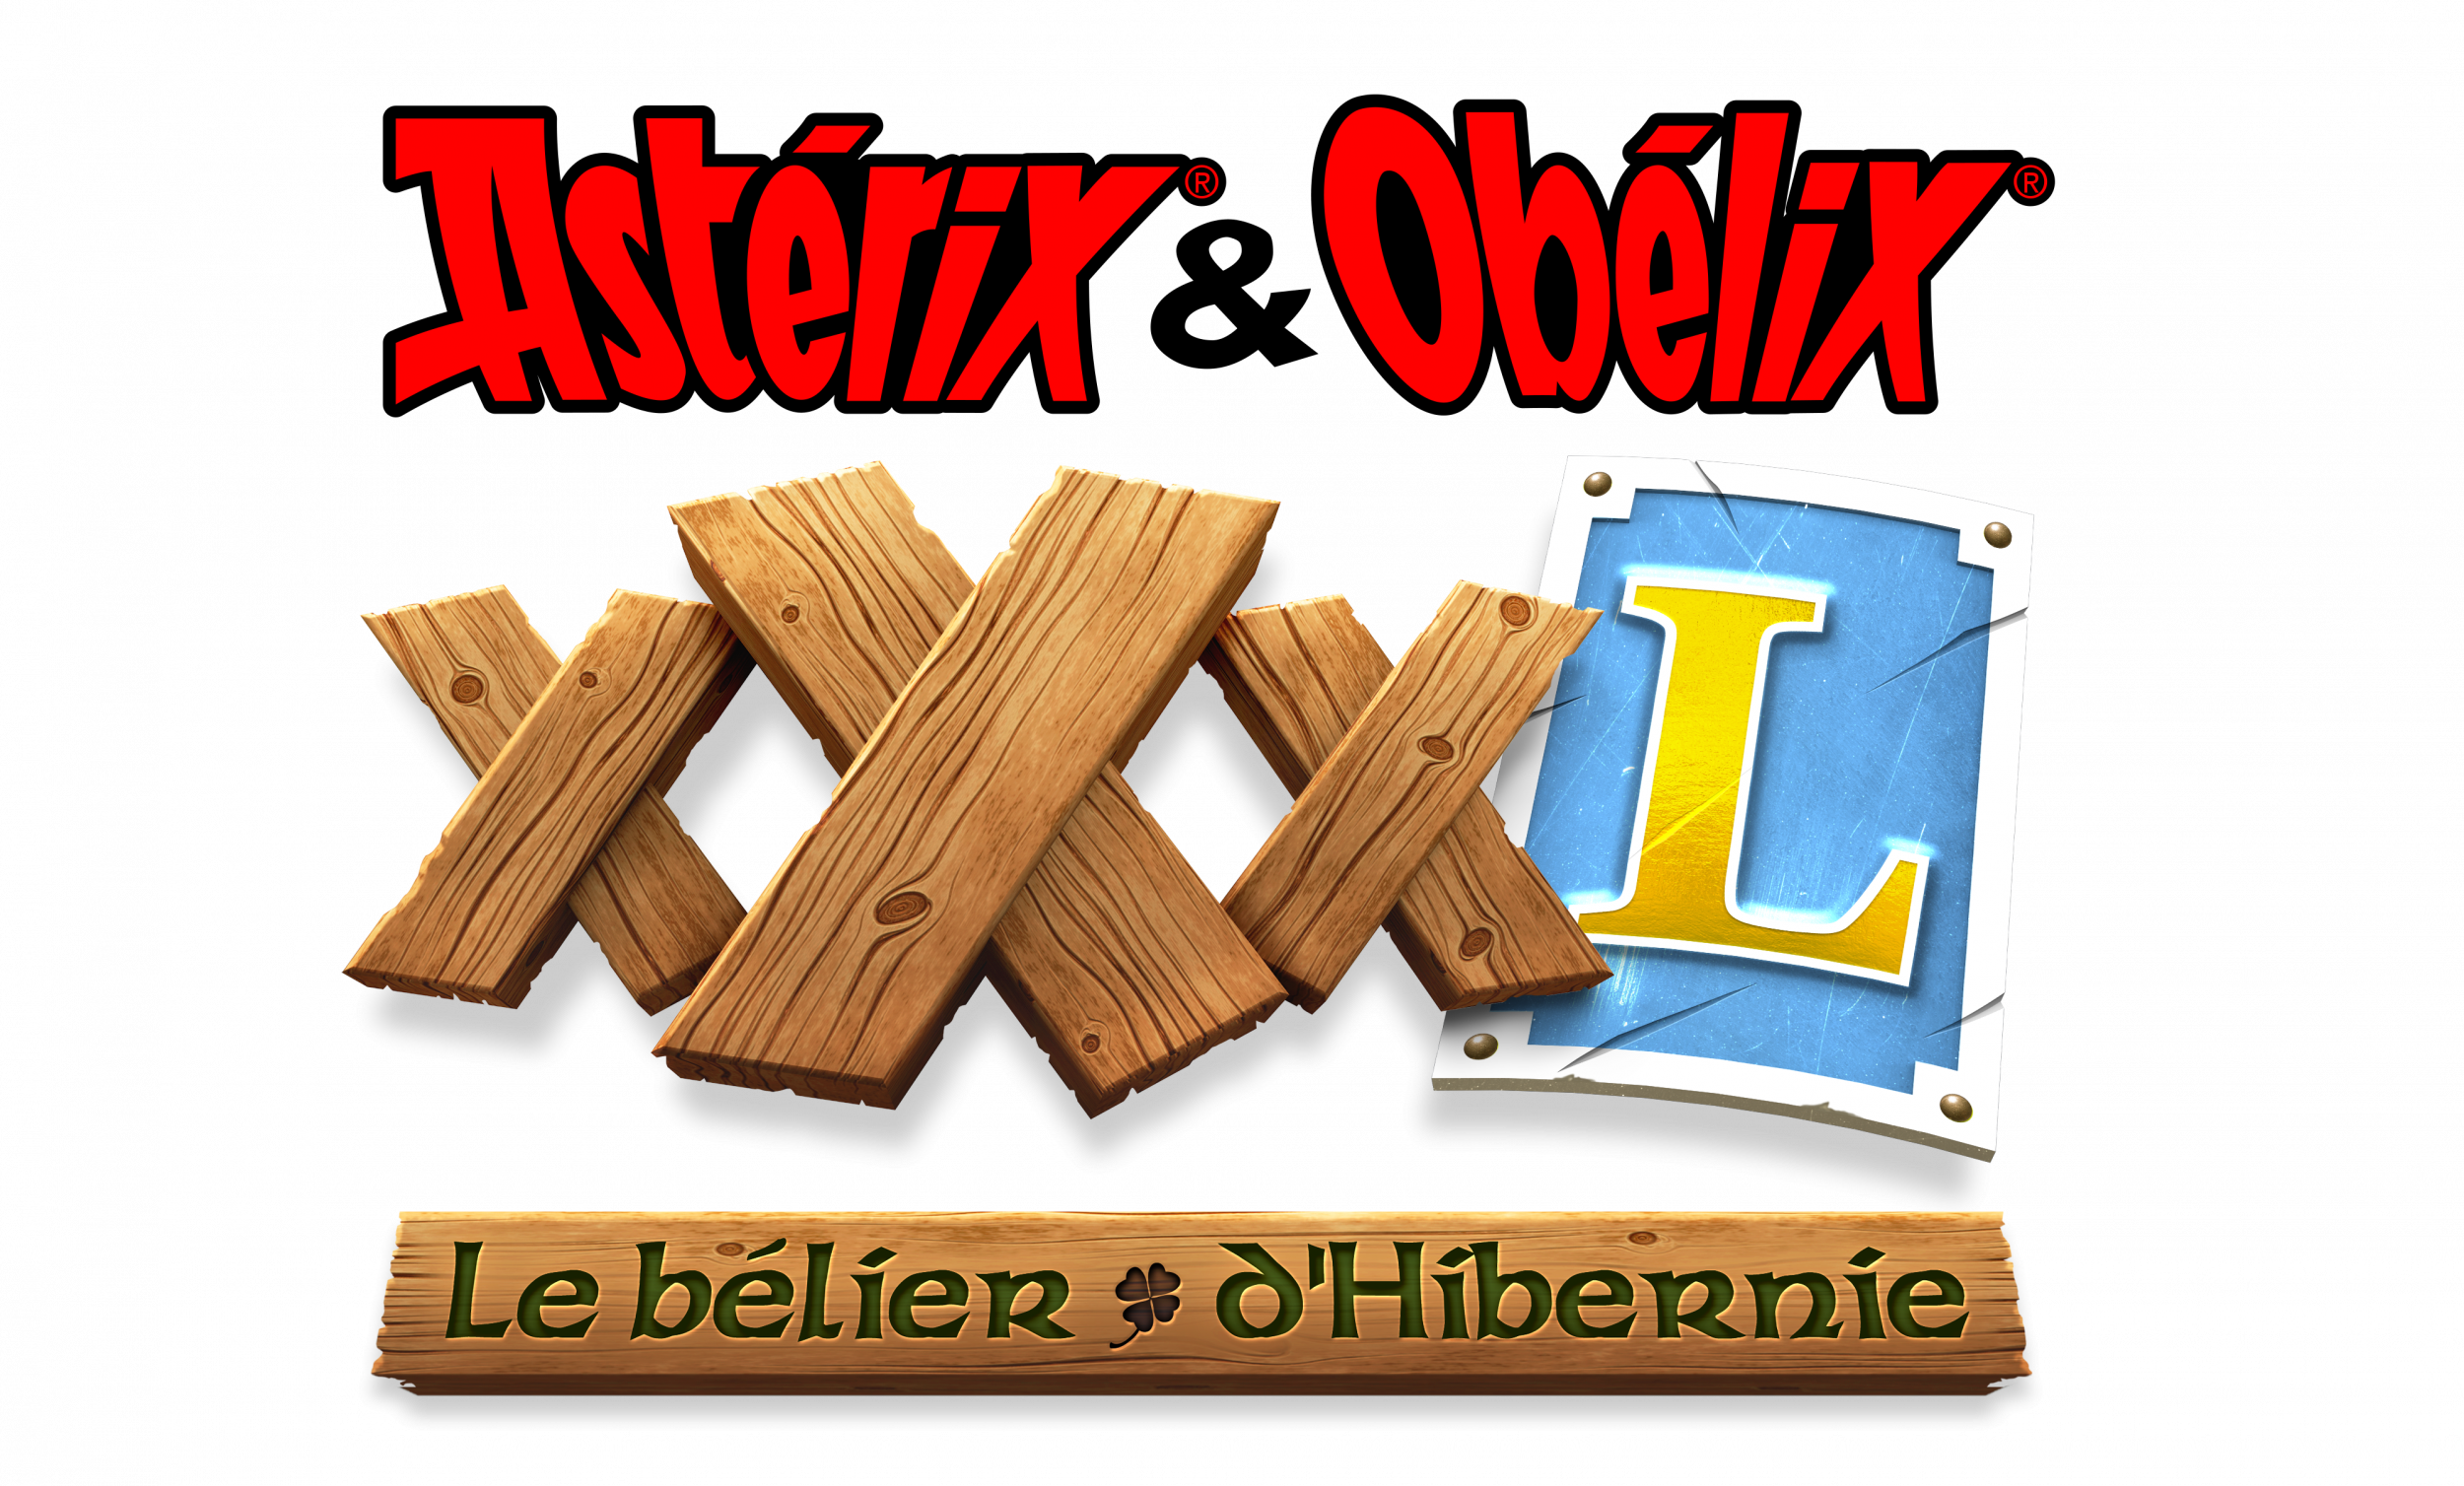 Xbox Series X & S Astérix & Obélix XXXL : Le Bélier d'Hibernie